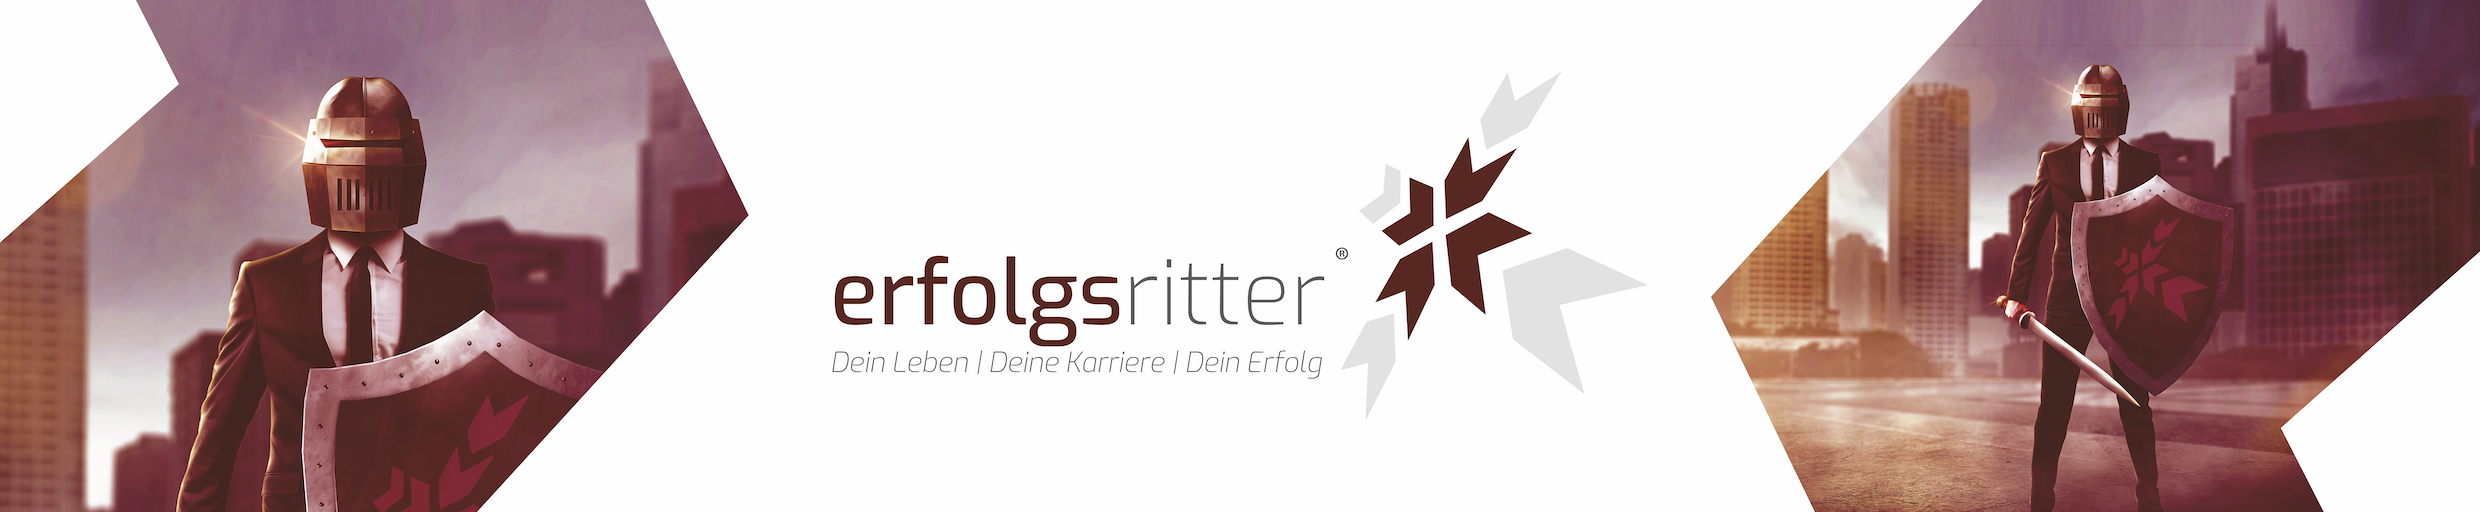 Erfolgsritter GmbH - Banner